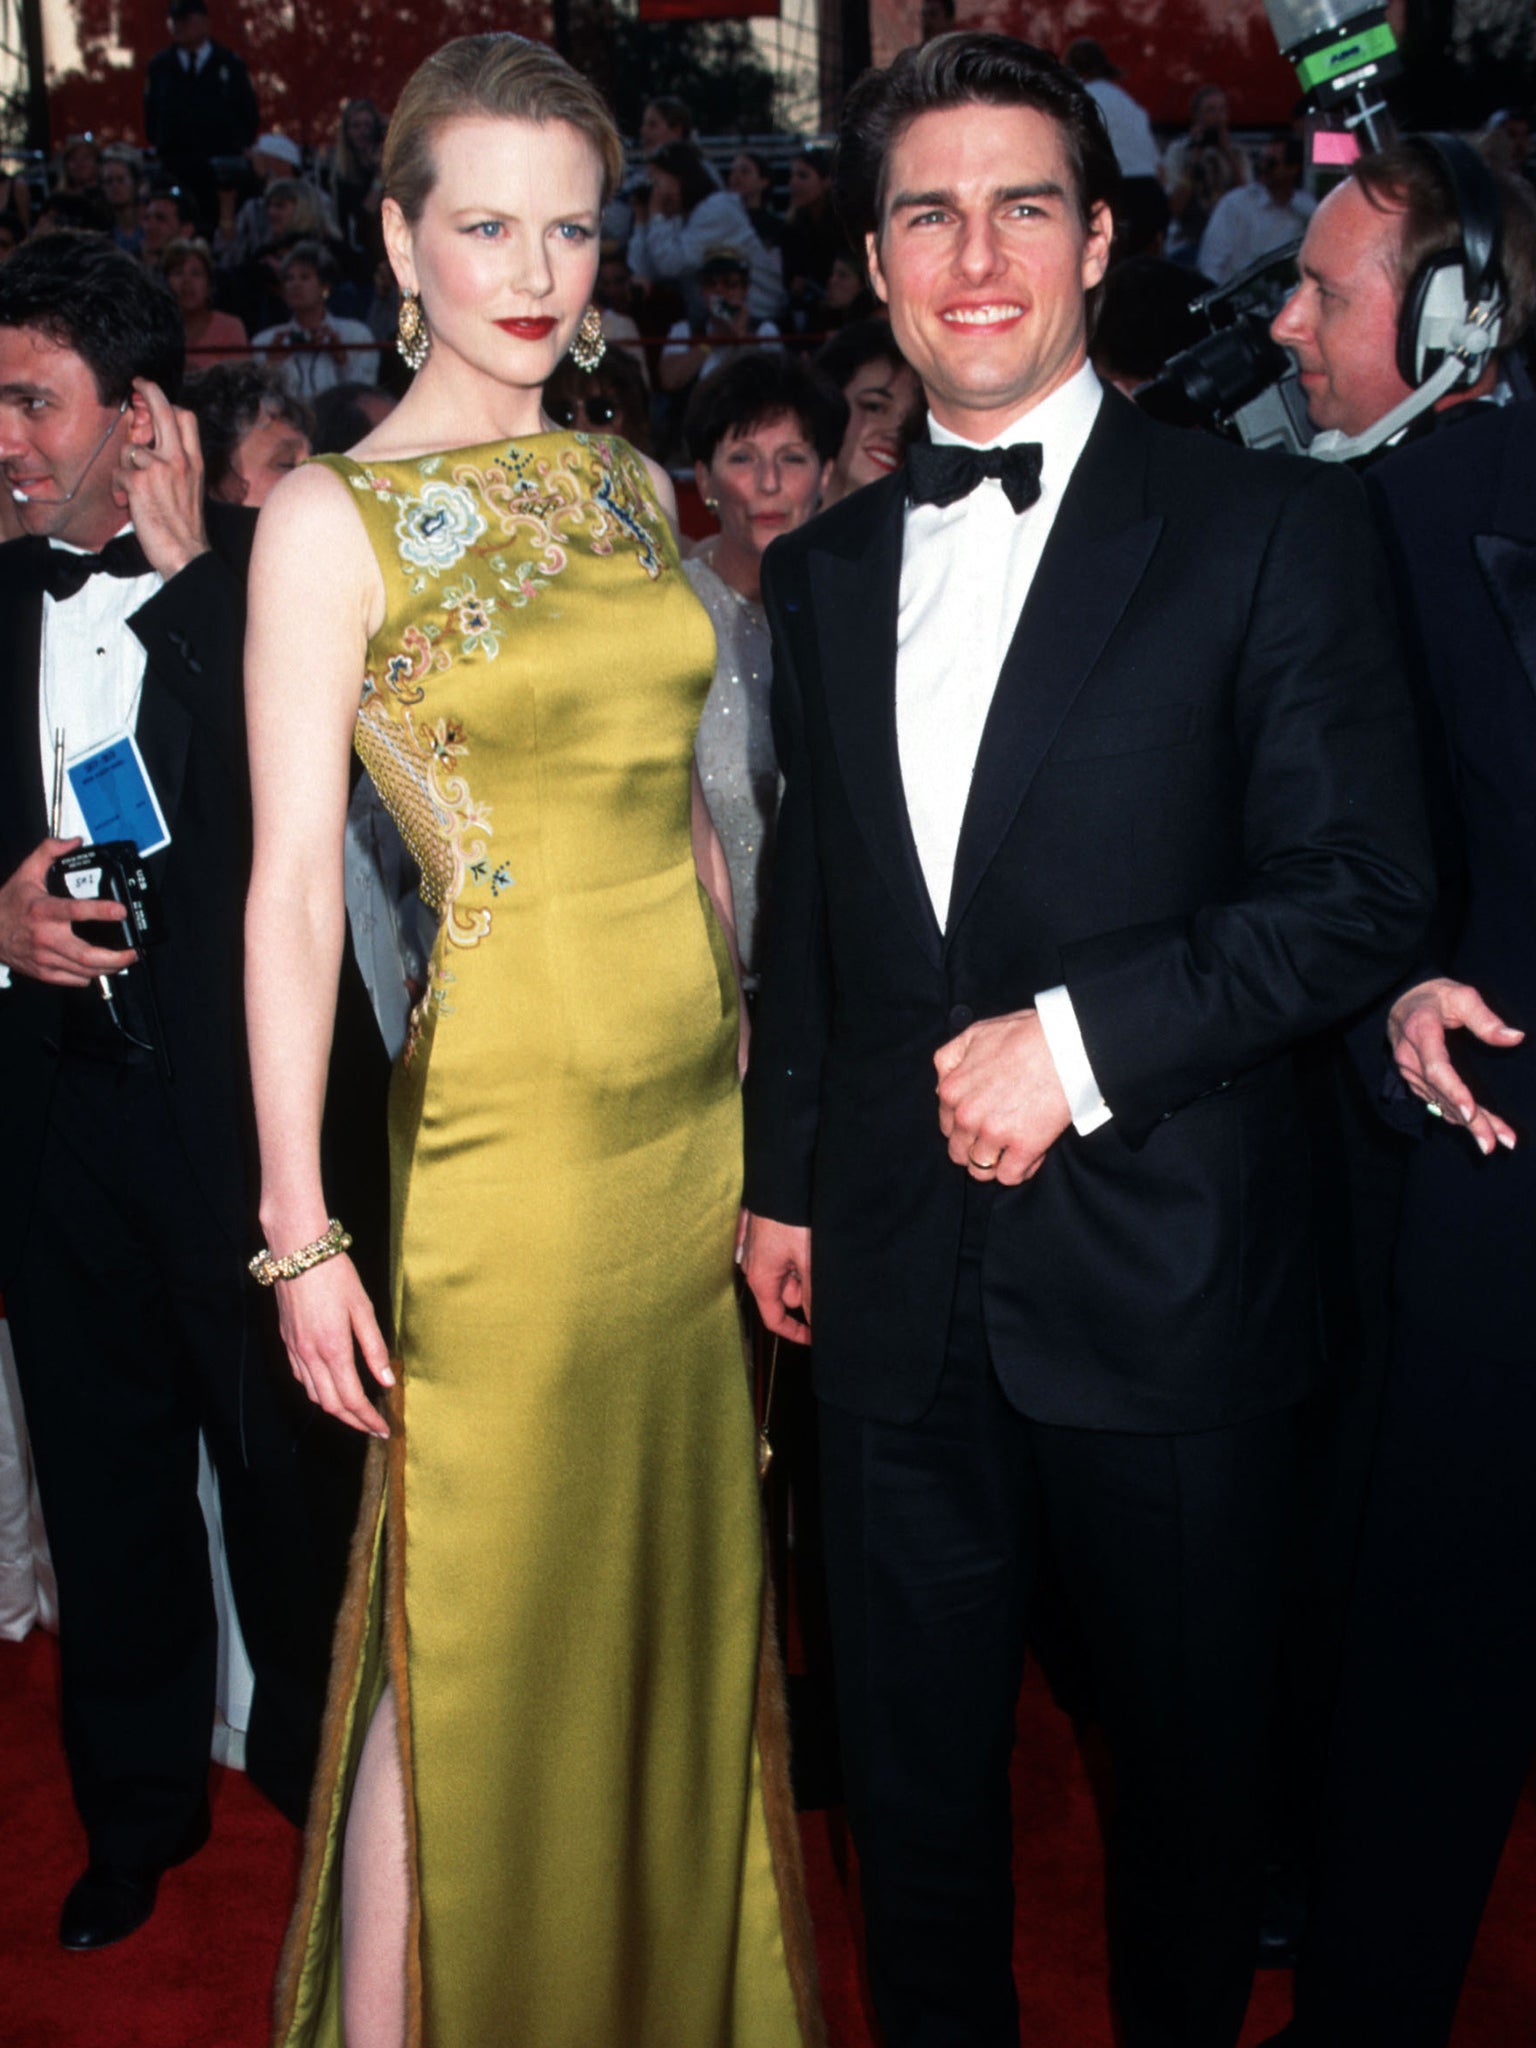 Best supporting stylist: the late L’Wren Scott dressed Nicole Kidman in 1997